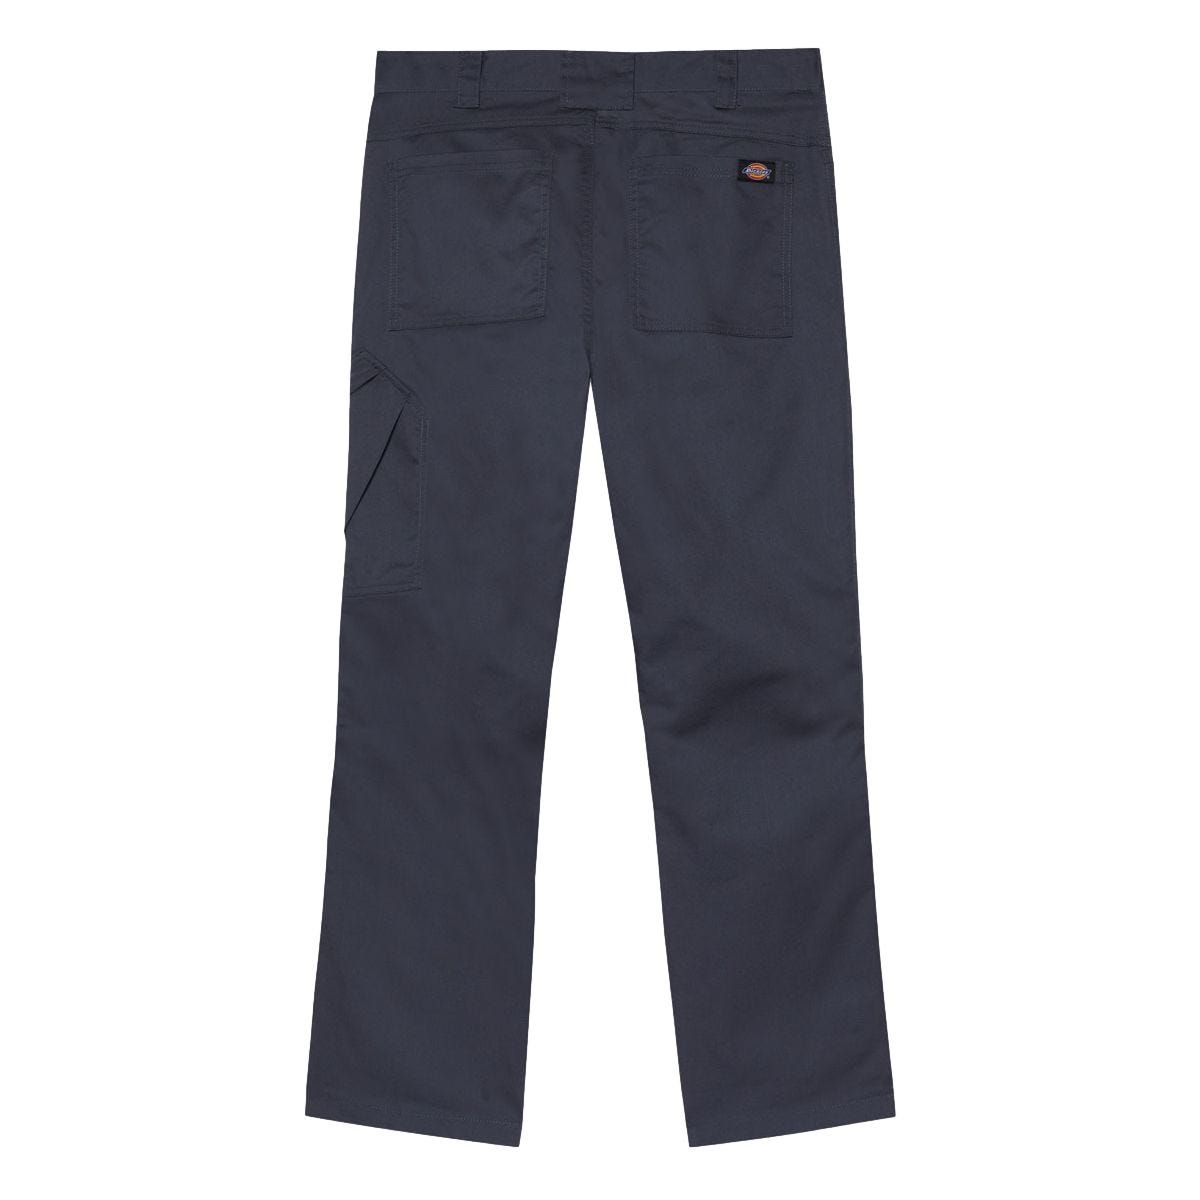 Pantalon de travail Action Flex gris - Dickies - Taille 52 2